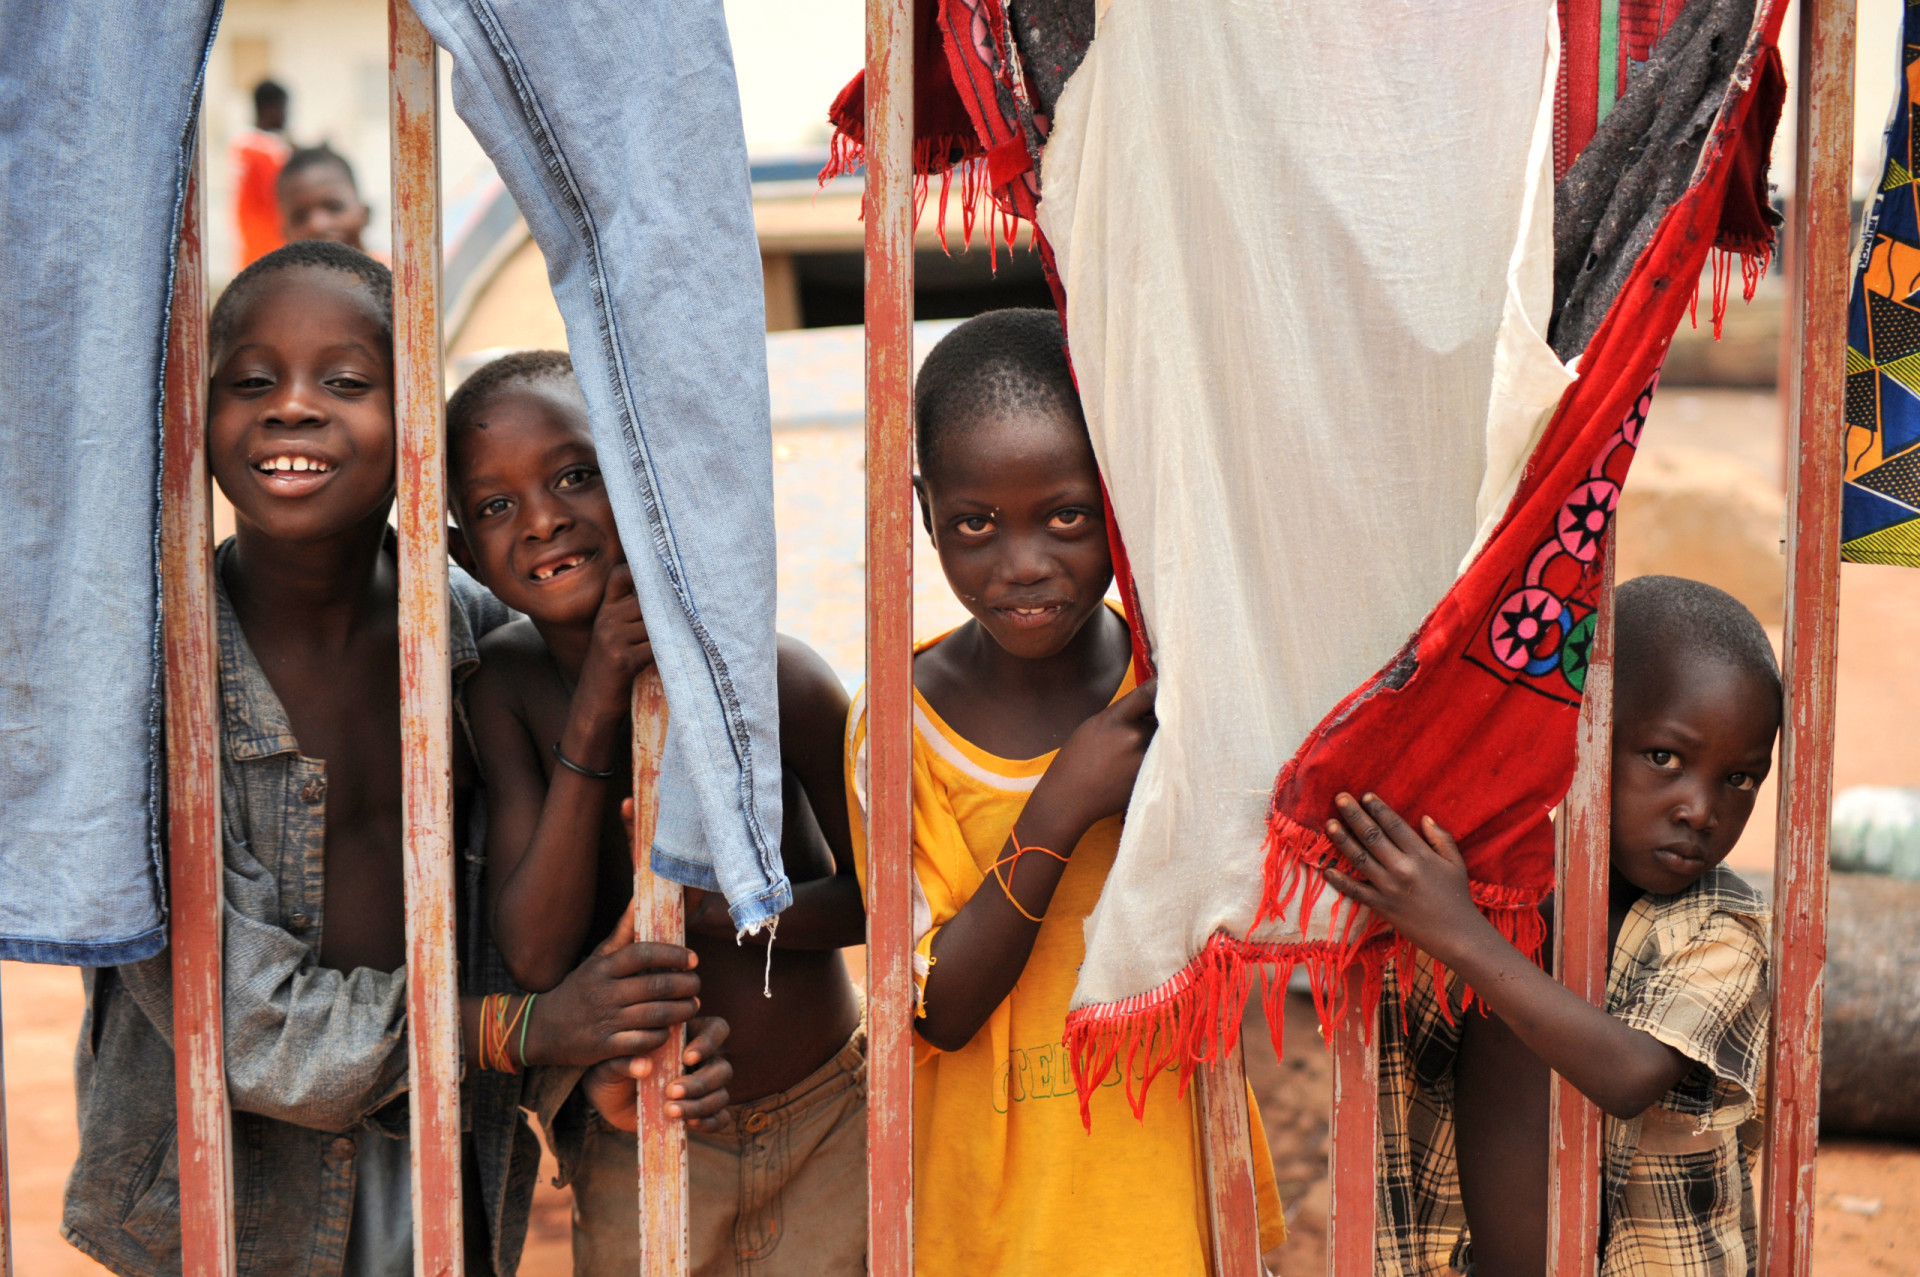 <p>Taux de fécondité moyen par femme : 5,45<br><br>Le taux de fécondité du Mali n'a que légèrement baissé au cours des dernières décennies, ce qui explique qu'il reste élevé.</p><p><a href="https://www.msn.com/fr-fr/community/channel/vid-7xx8mnucu55yw63we9va2gwr7uihbxwc68fxqp25x6tg4ftibpra?cvid=94631541bc0f4f89bfd59158d696ad7e">Suivez-nous et accédez tous les jours à du contenu exclusif</a></p>